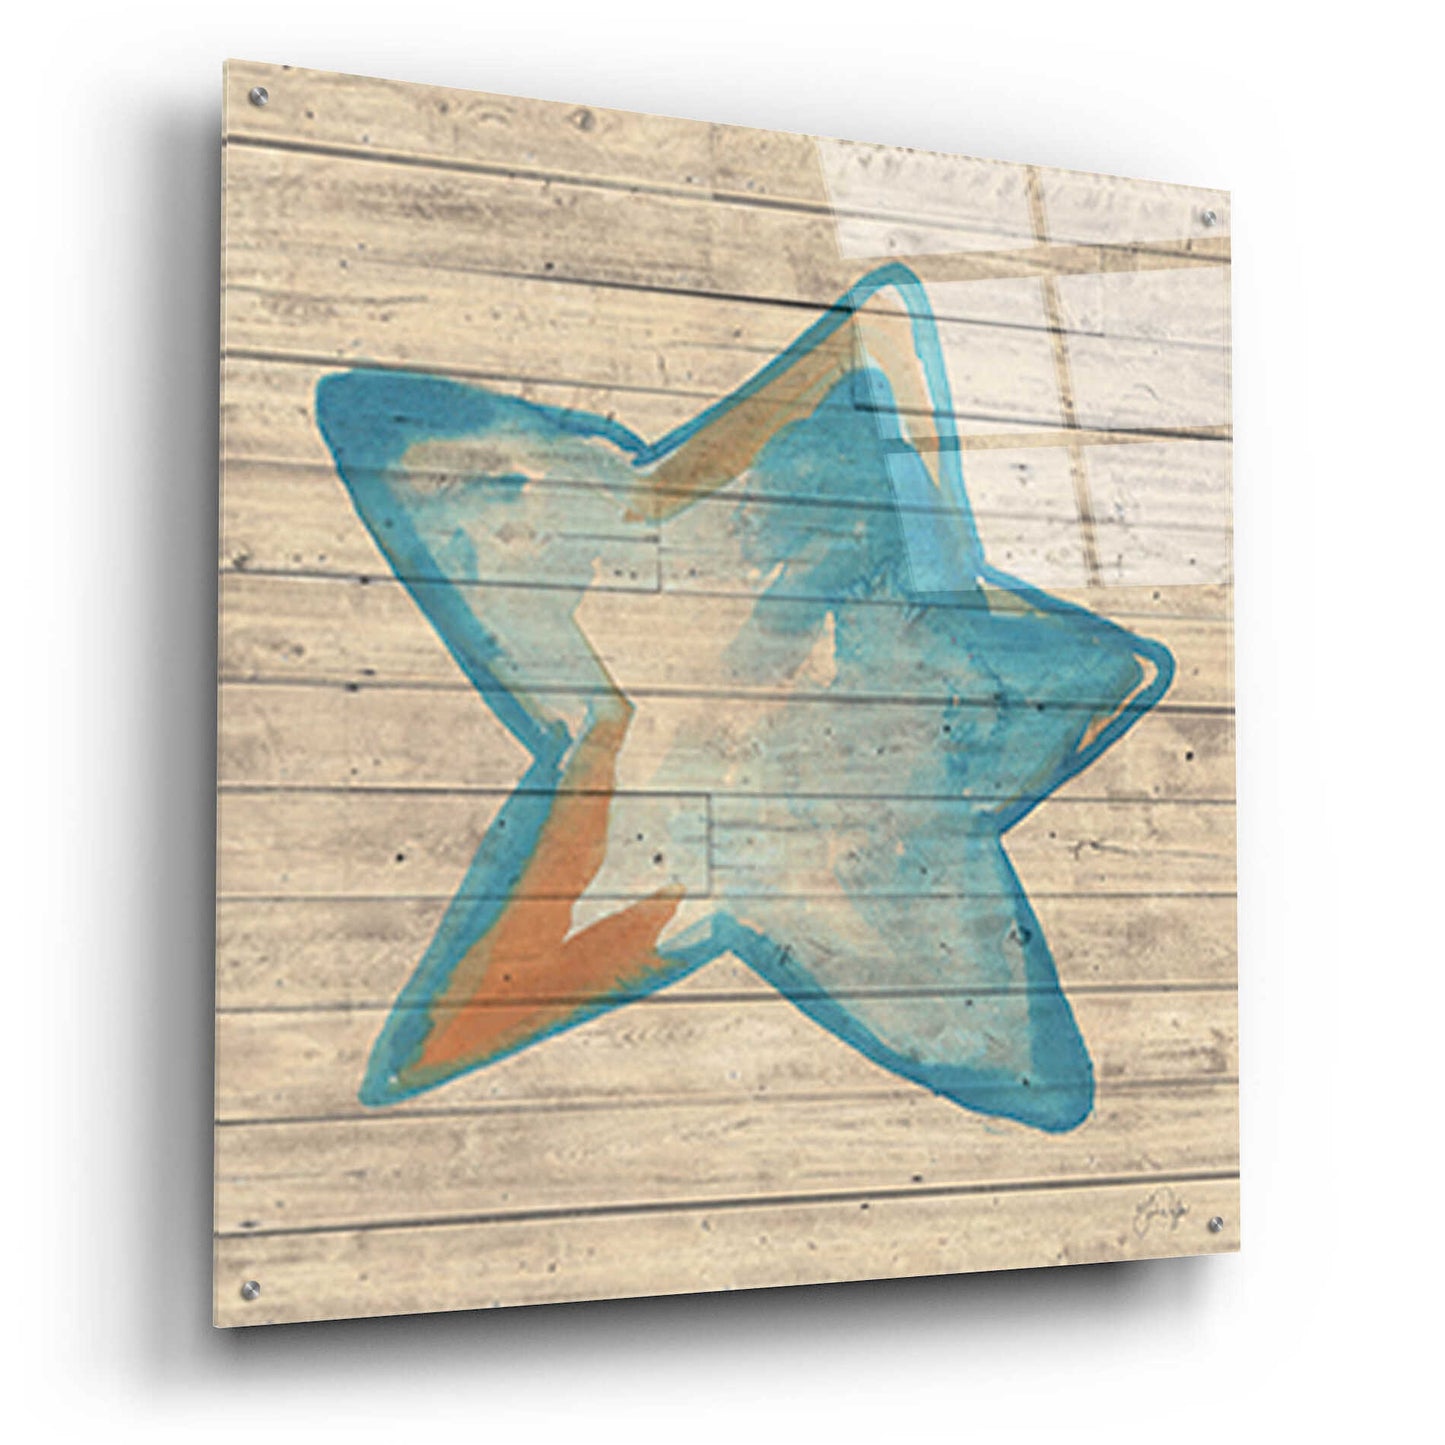 Epic Art 'A Starfish Wish' by Yass Naffas Designs, Acrylic Glass Wall Art,36x36